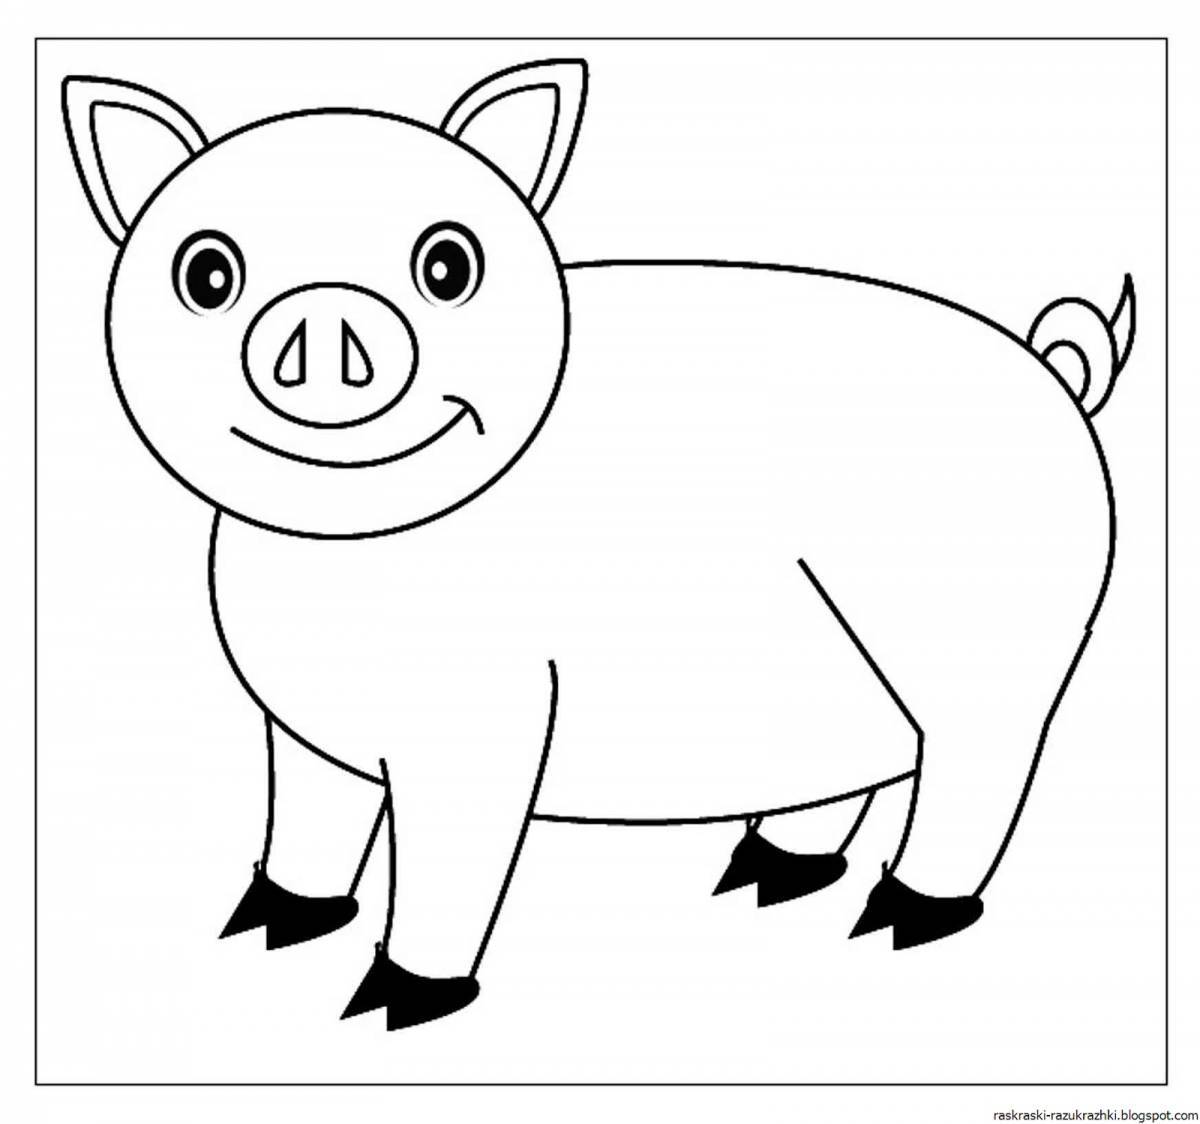 Fun coloring pig